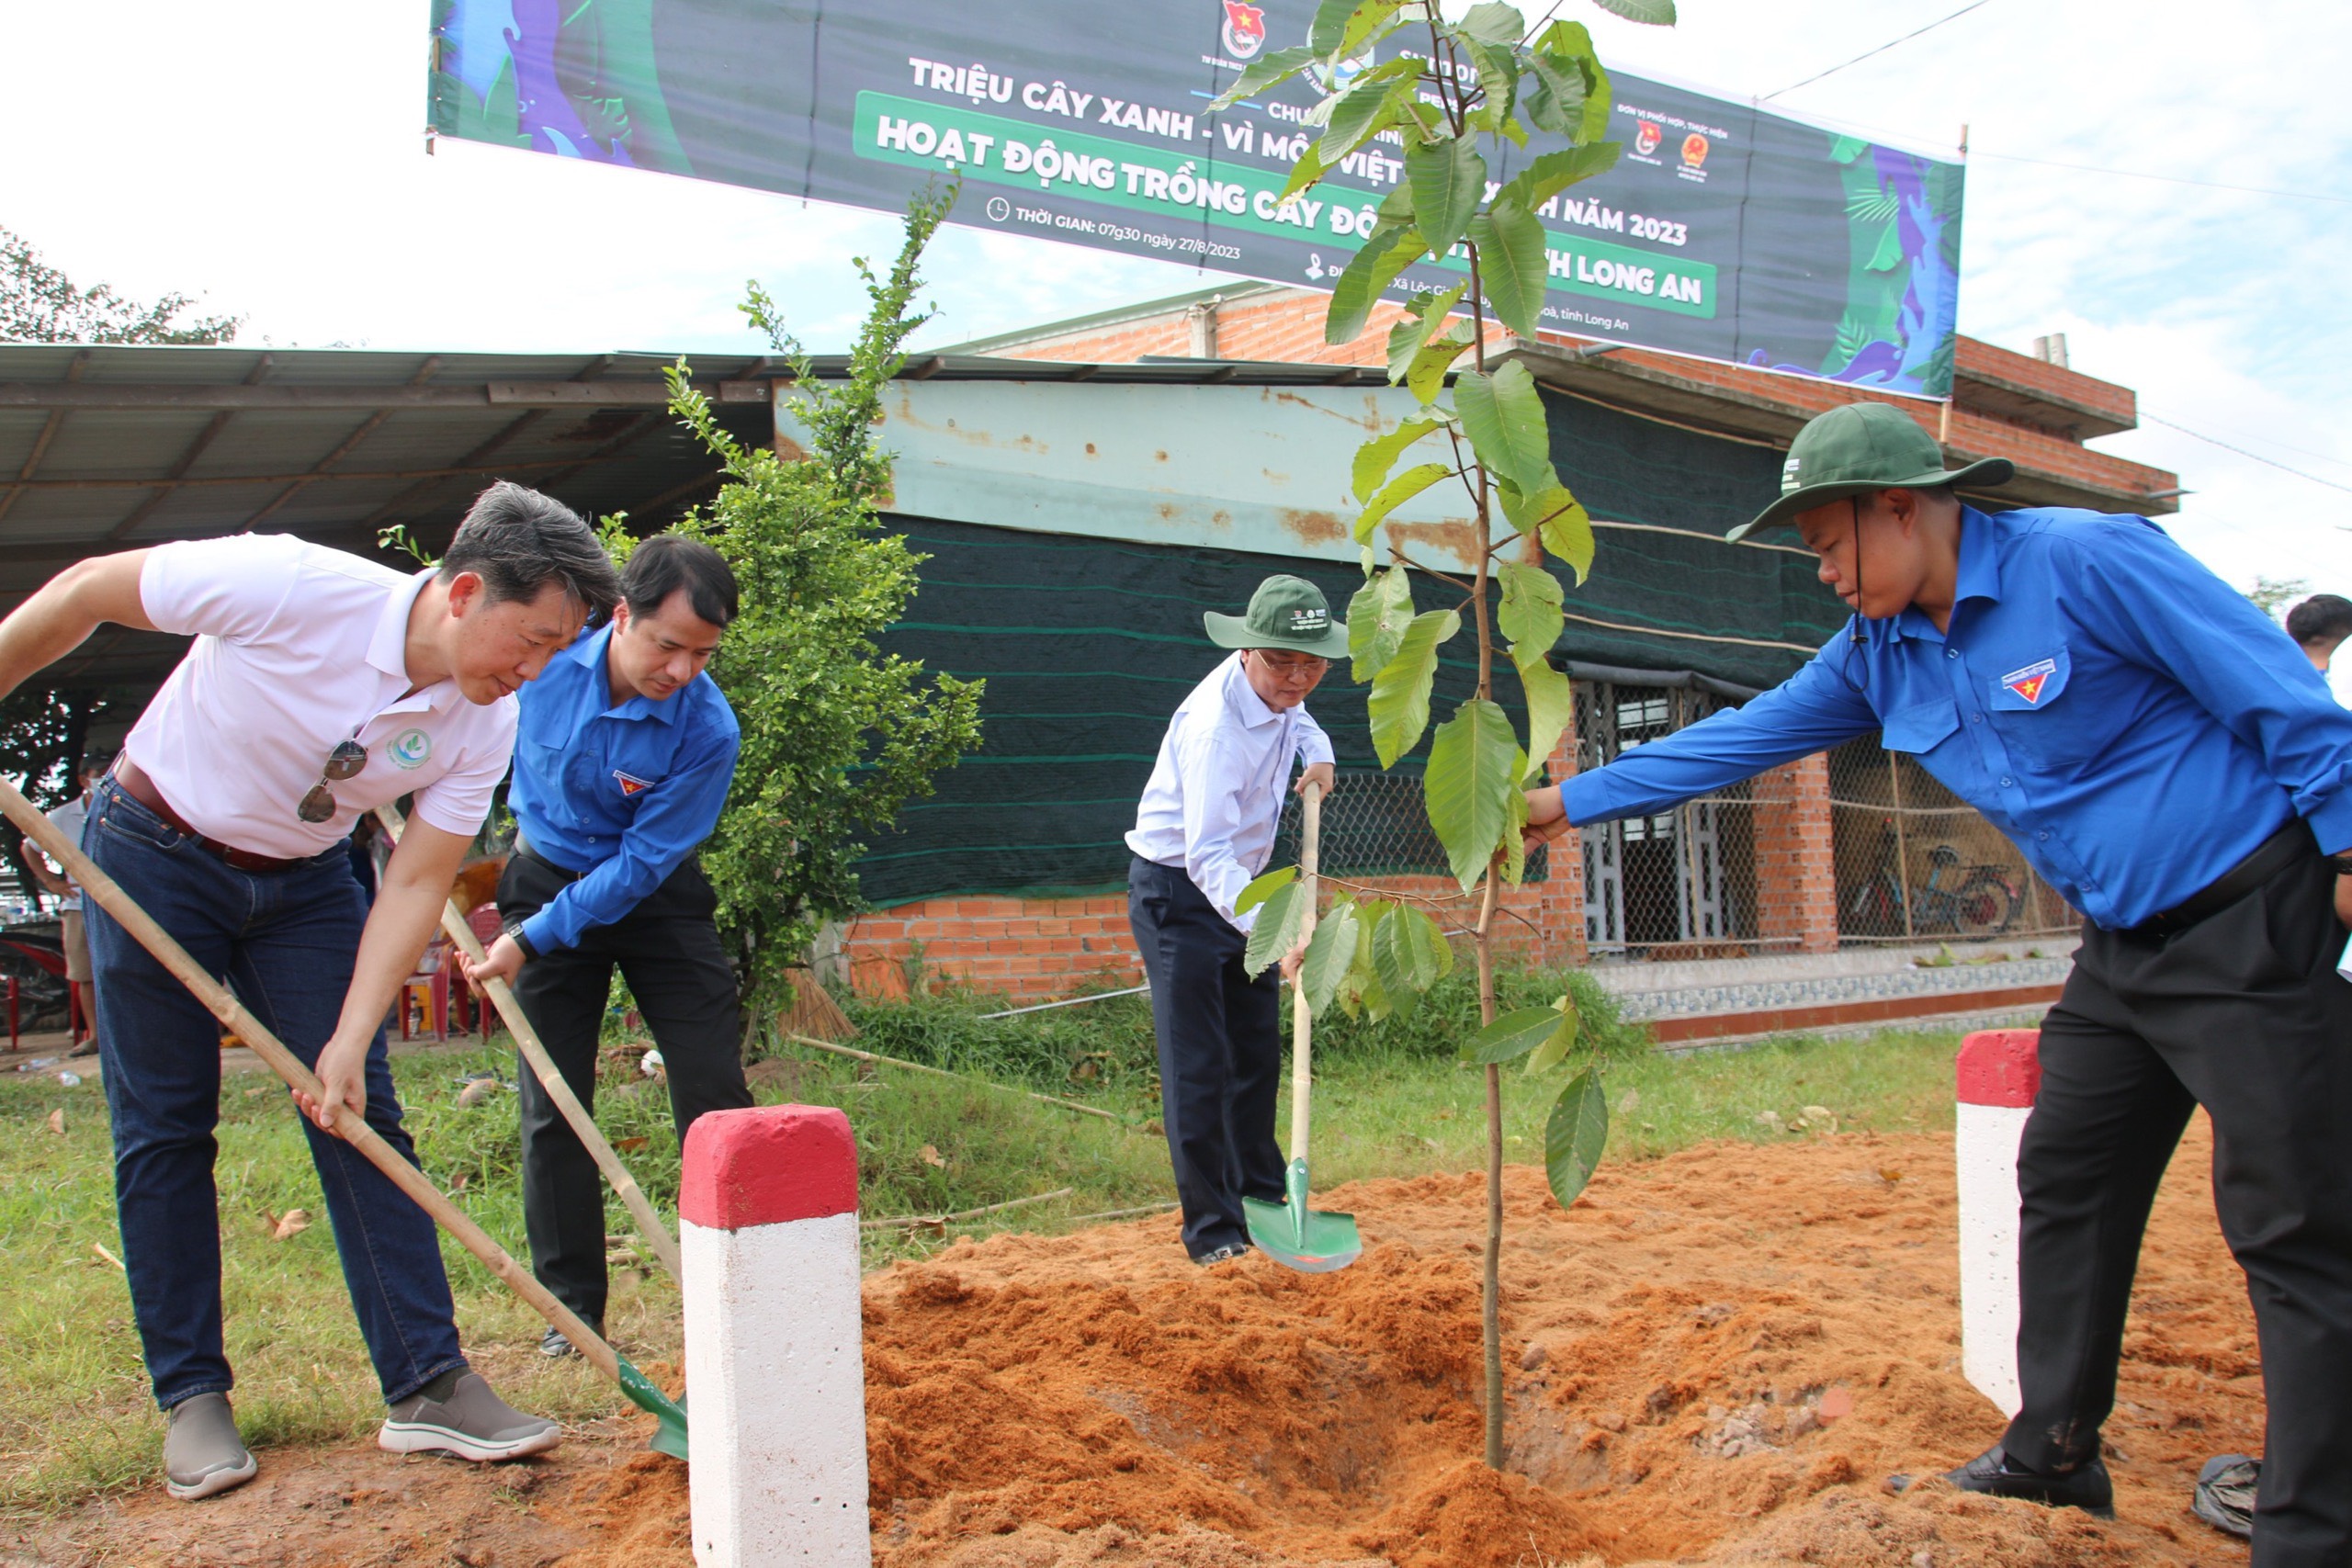 Trồng mới 6.000 cây xanh tại tỉnh Long An trong chương trình “Triệu cây xanh – Vì một Việt Nam xanh” năm 2023